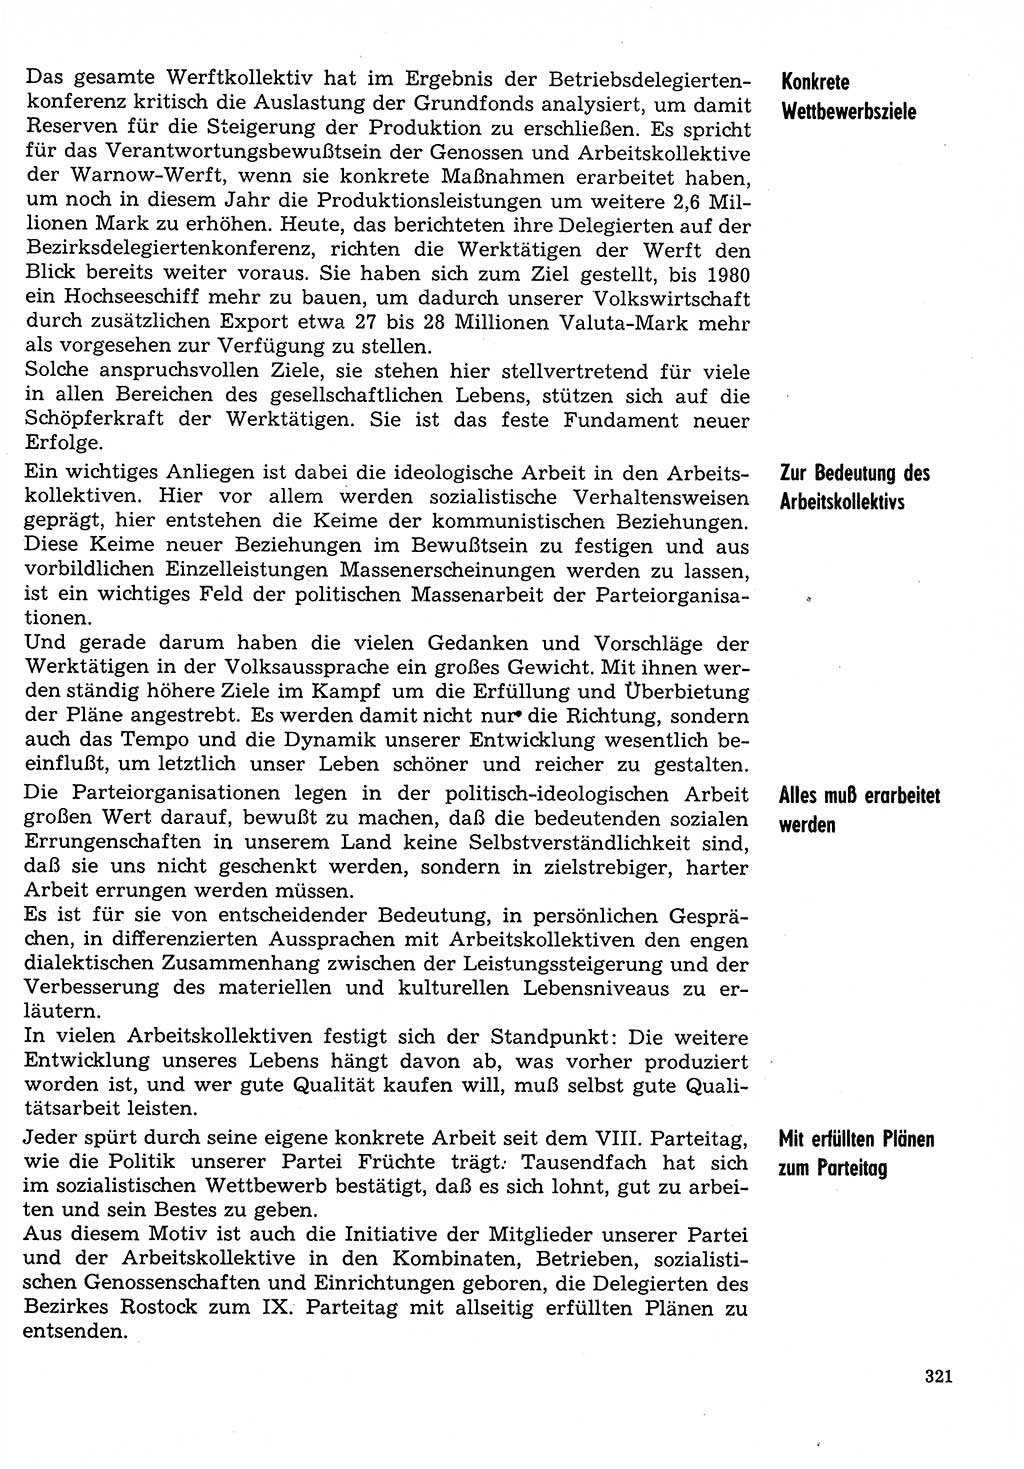 Neuer Weg (NW), Organ des Zentralkomitees (ZK) der SED (Sozialistische Einheitspartei Deutschlands) für Fragen des Parteilebens, 31. Jahrgang [Deutsche Demokratische Republik (DDR)] 1976, Seite 321 (NW ZK SED DDR 1976, S. 321)